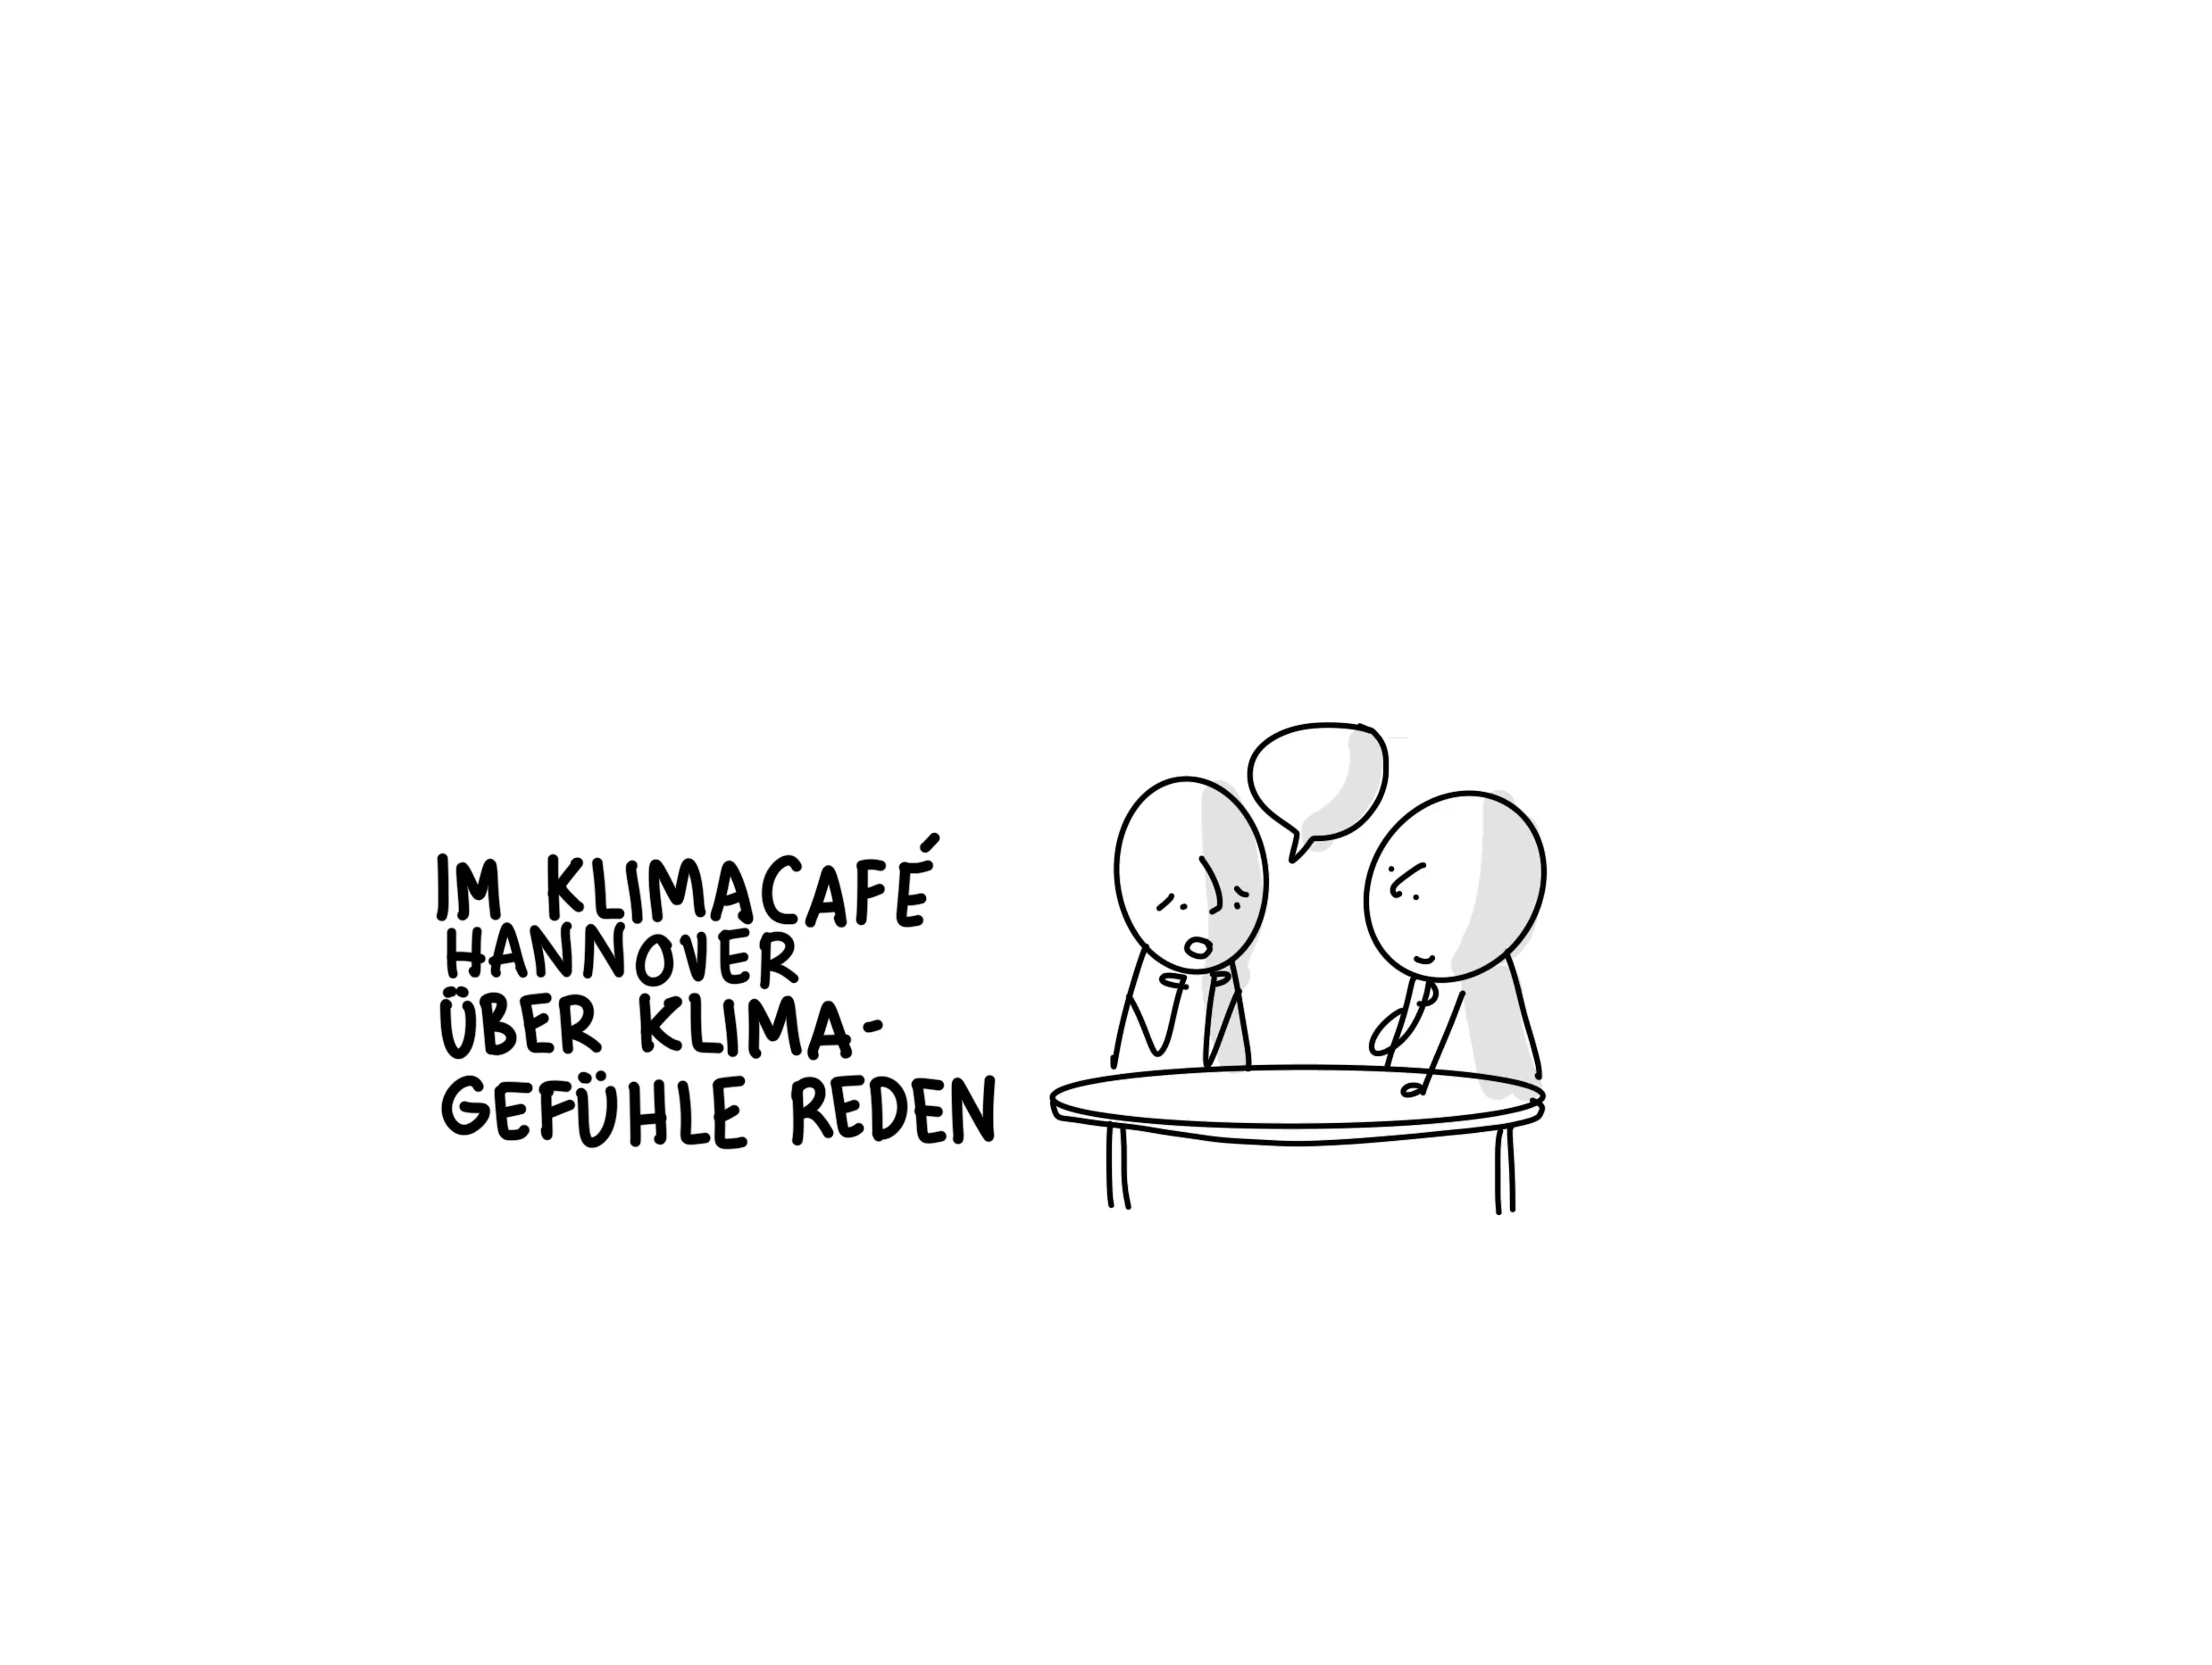 Sketchnote mit Text "Im Klimacafe Hannover über Klimagefühle reden"